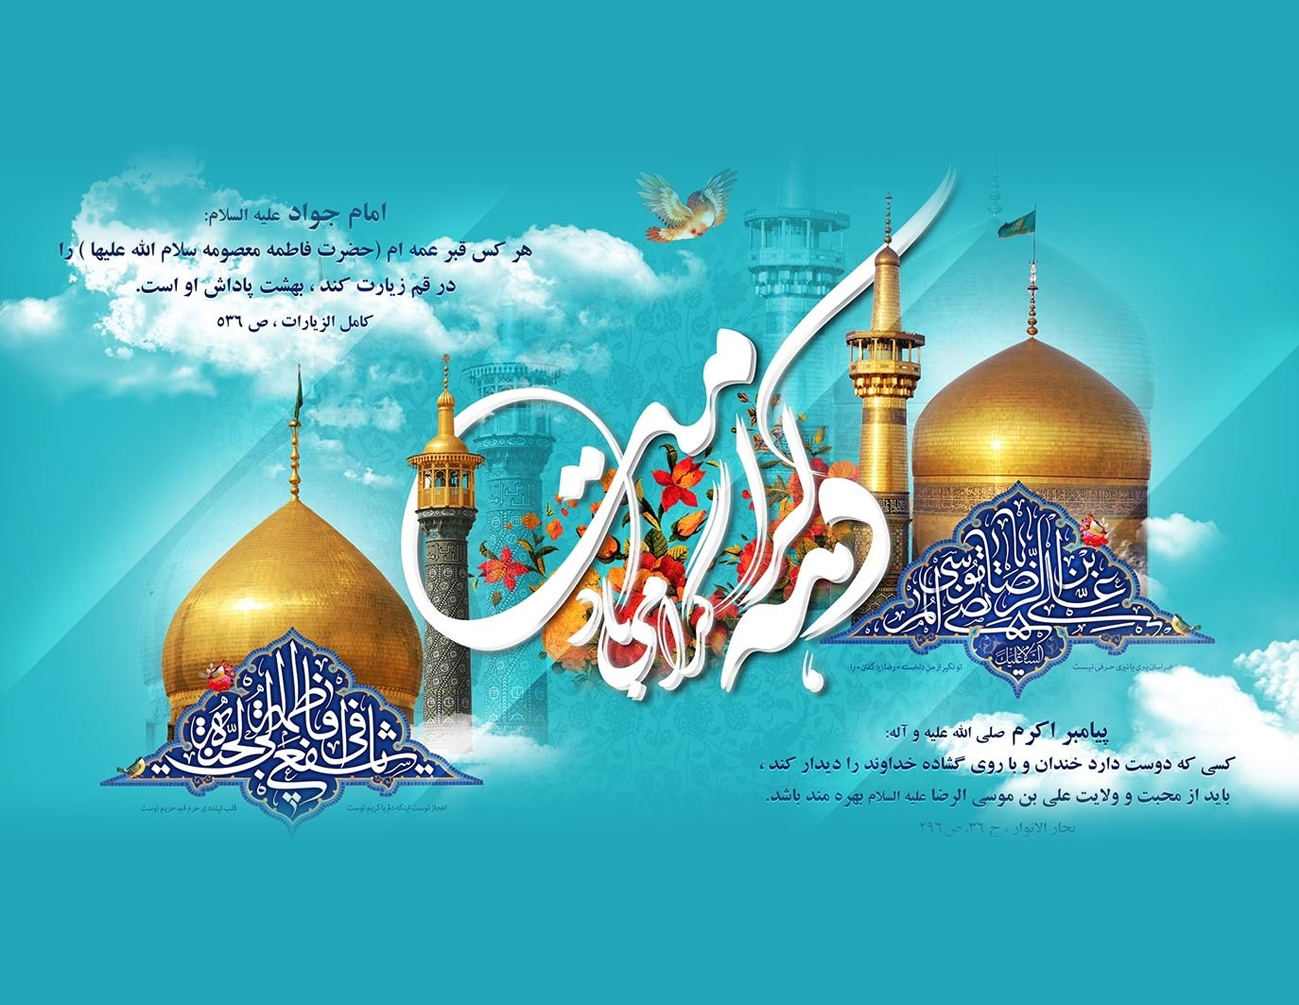 ویژه برنامه کانون های مساجد استان اردبیل به مناسبت دهه کرامت تشریح شد